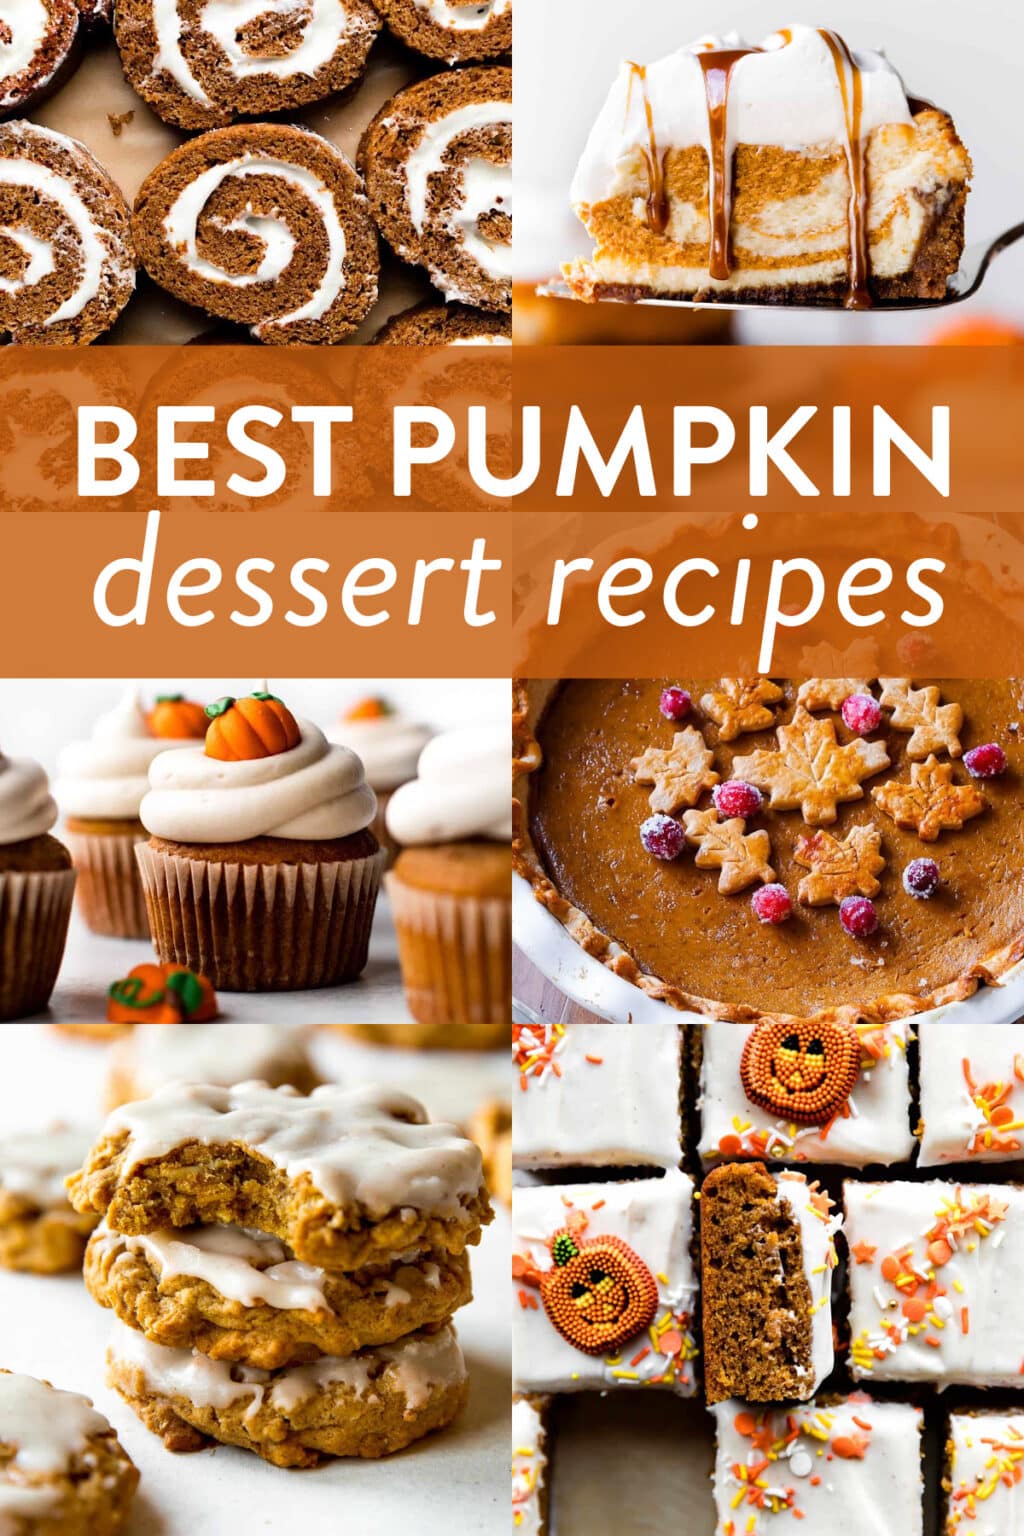 30+ Best Pumpkin Dessert Recipes - Sally's Baking Addiction